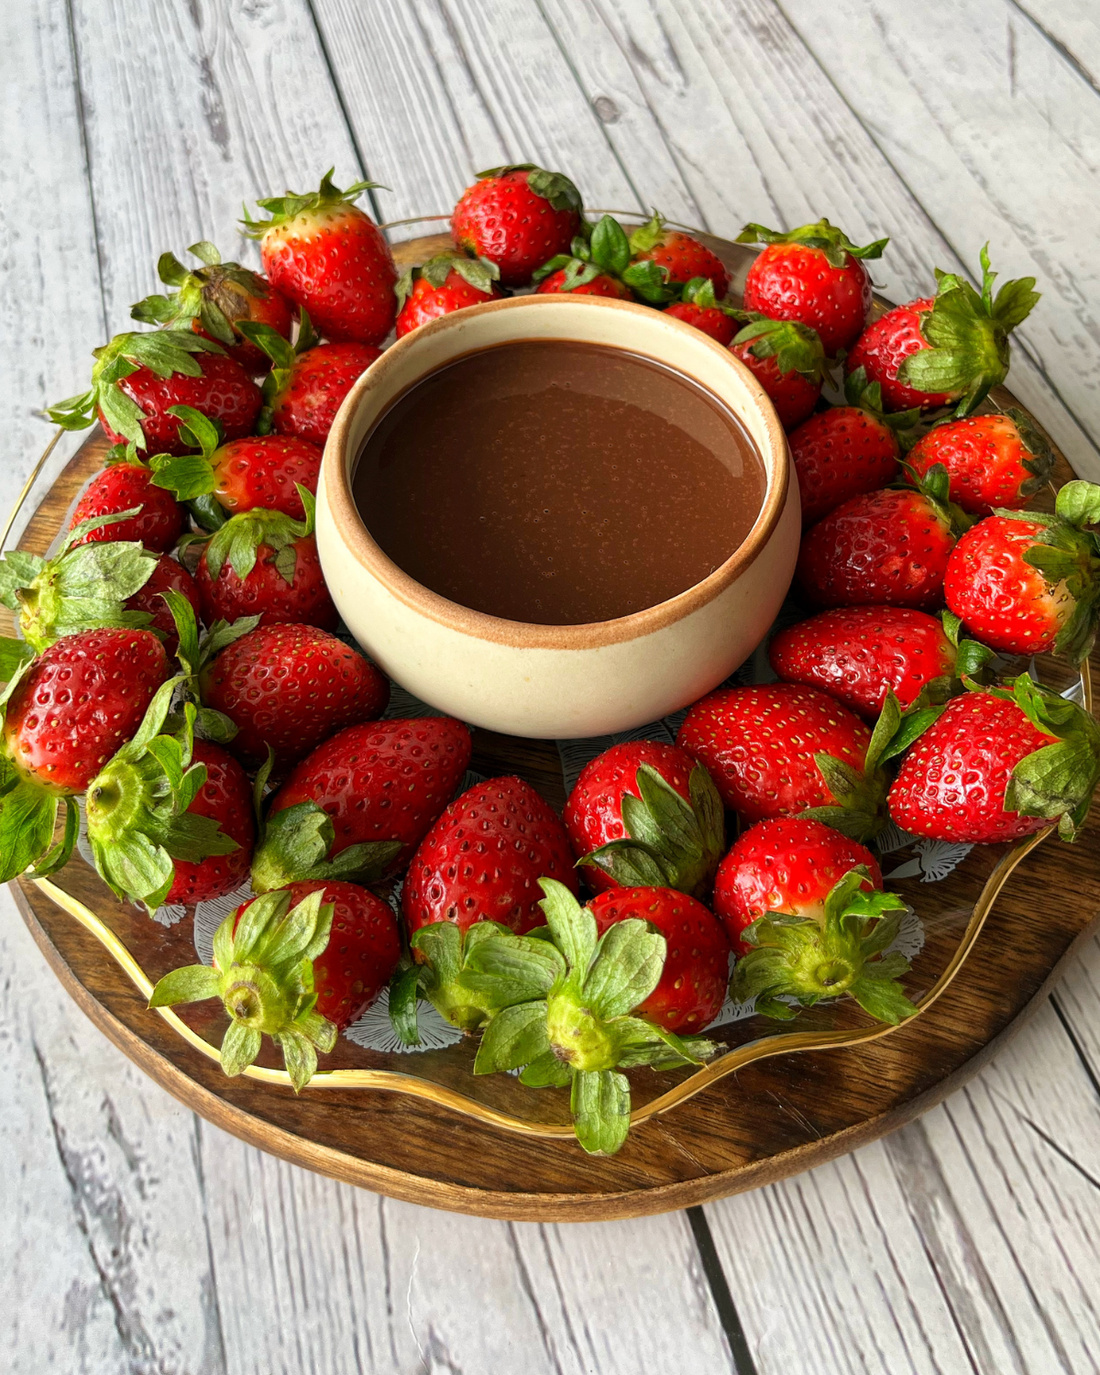 Strawberries and Chocolate